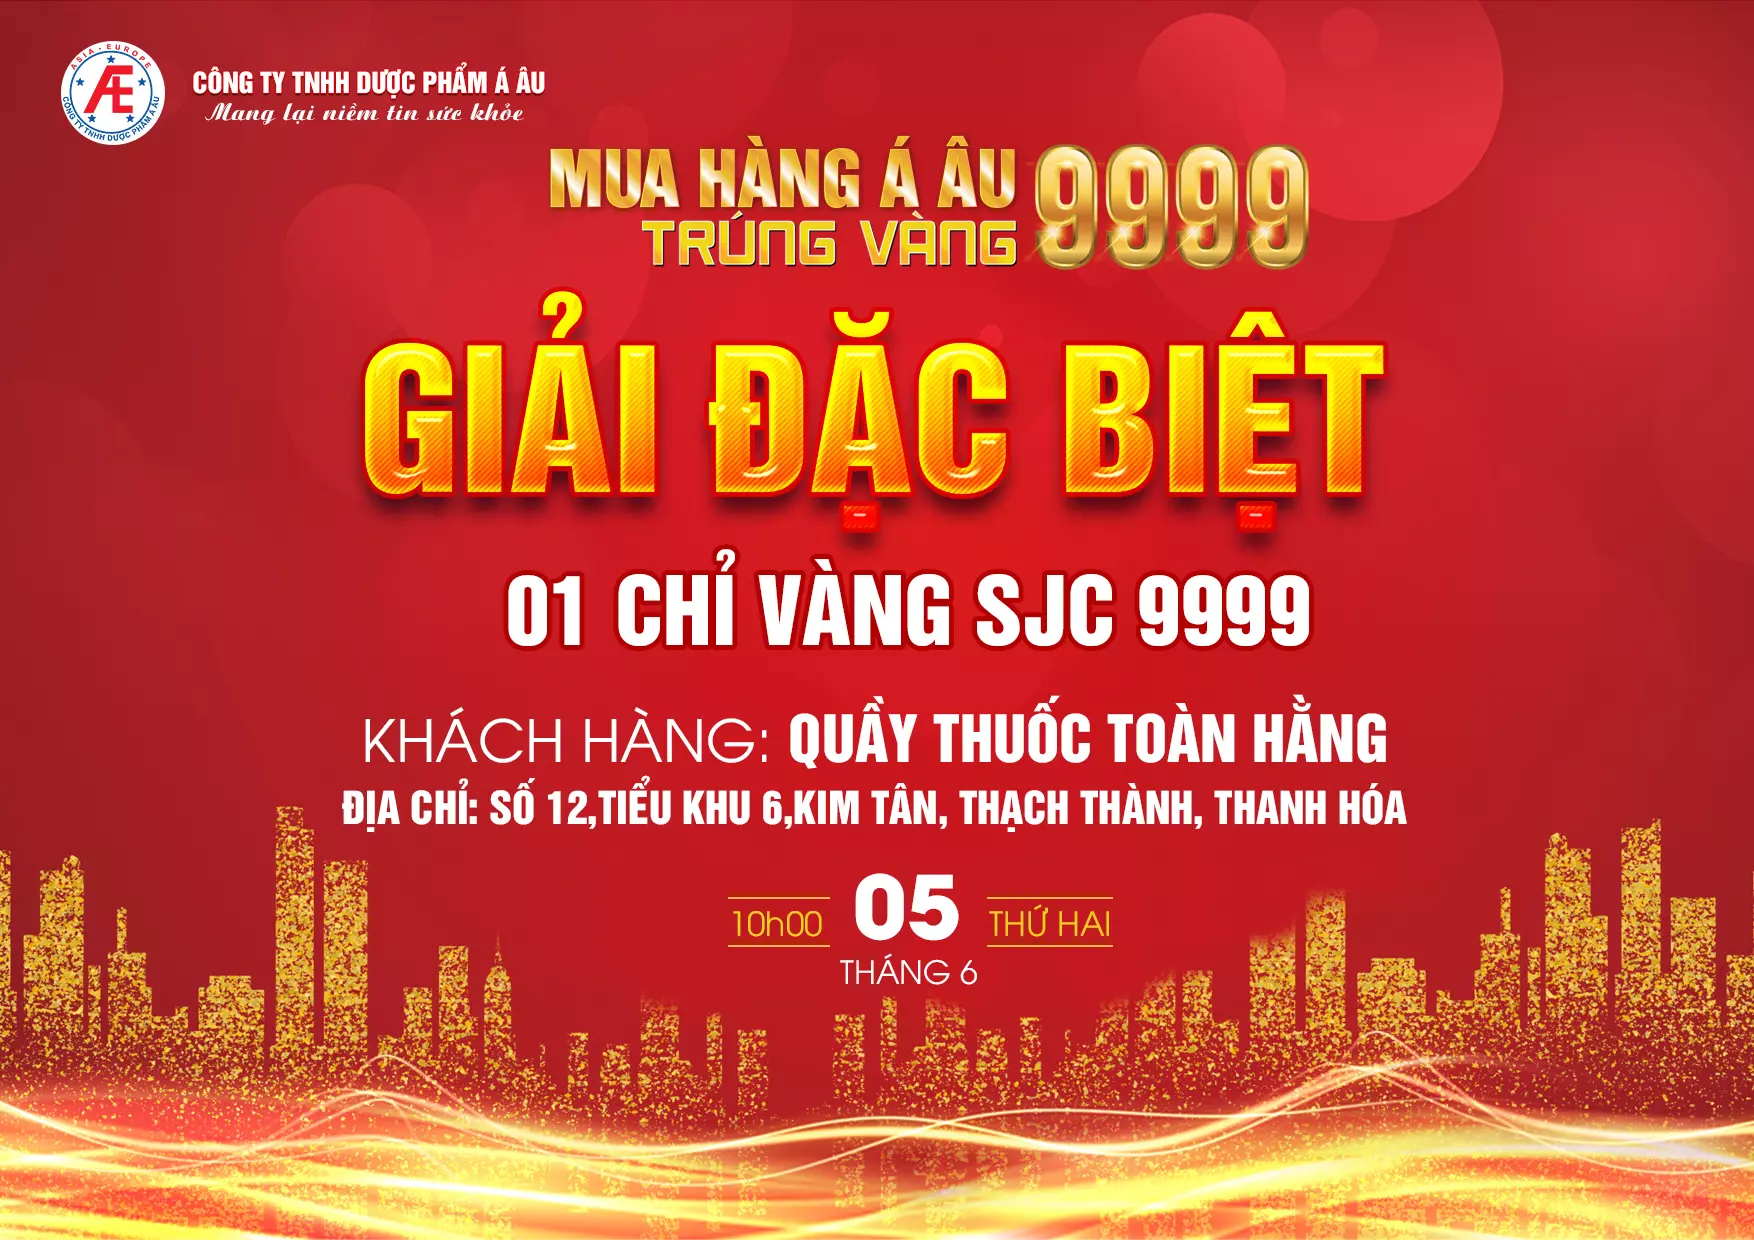 Xin chúc mừng Quầy thuốc Toàn Hằng - Thanh Hóa là nhà thuốc đầu tiên trúng giải đặc biệt là 1 chỉ vàng SJC 9999